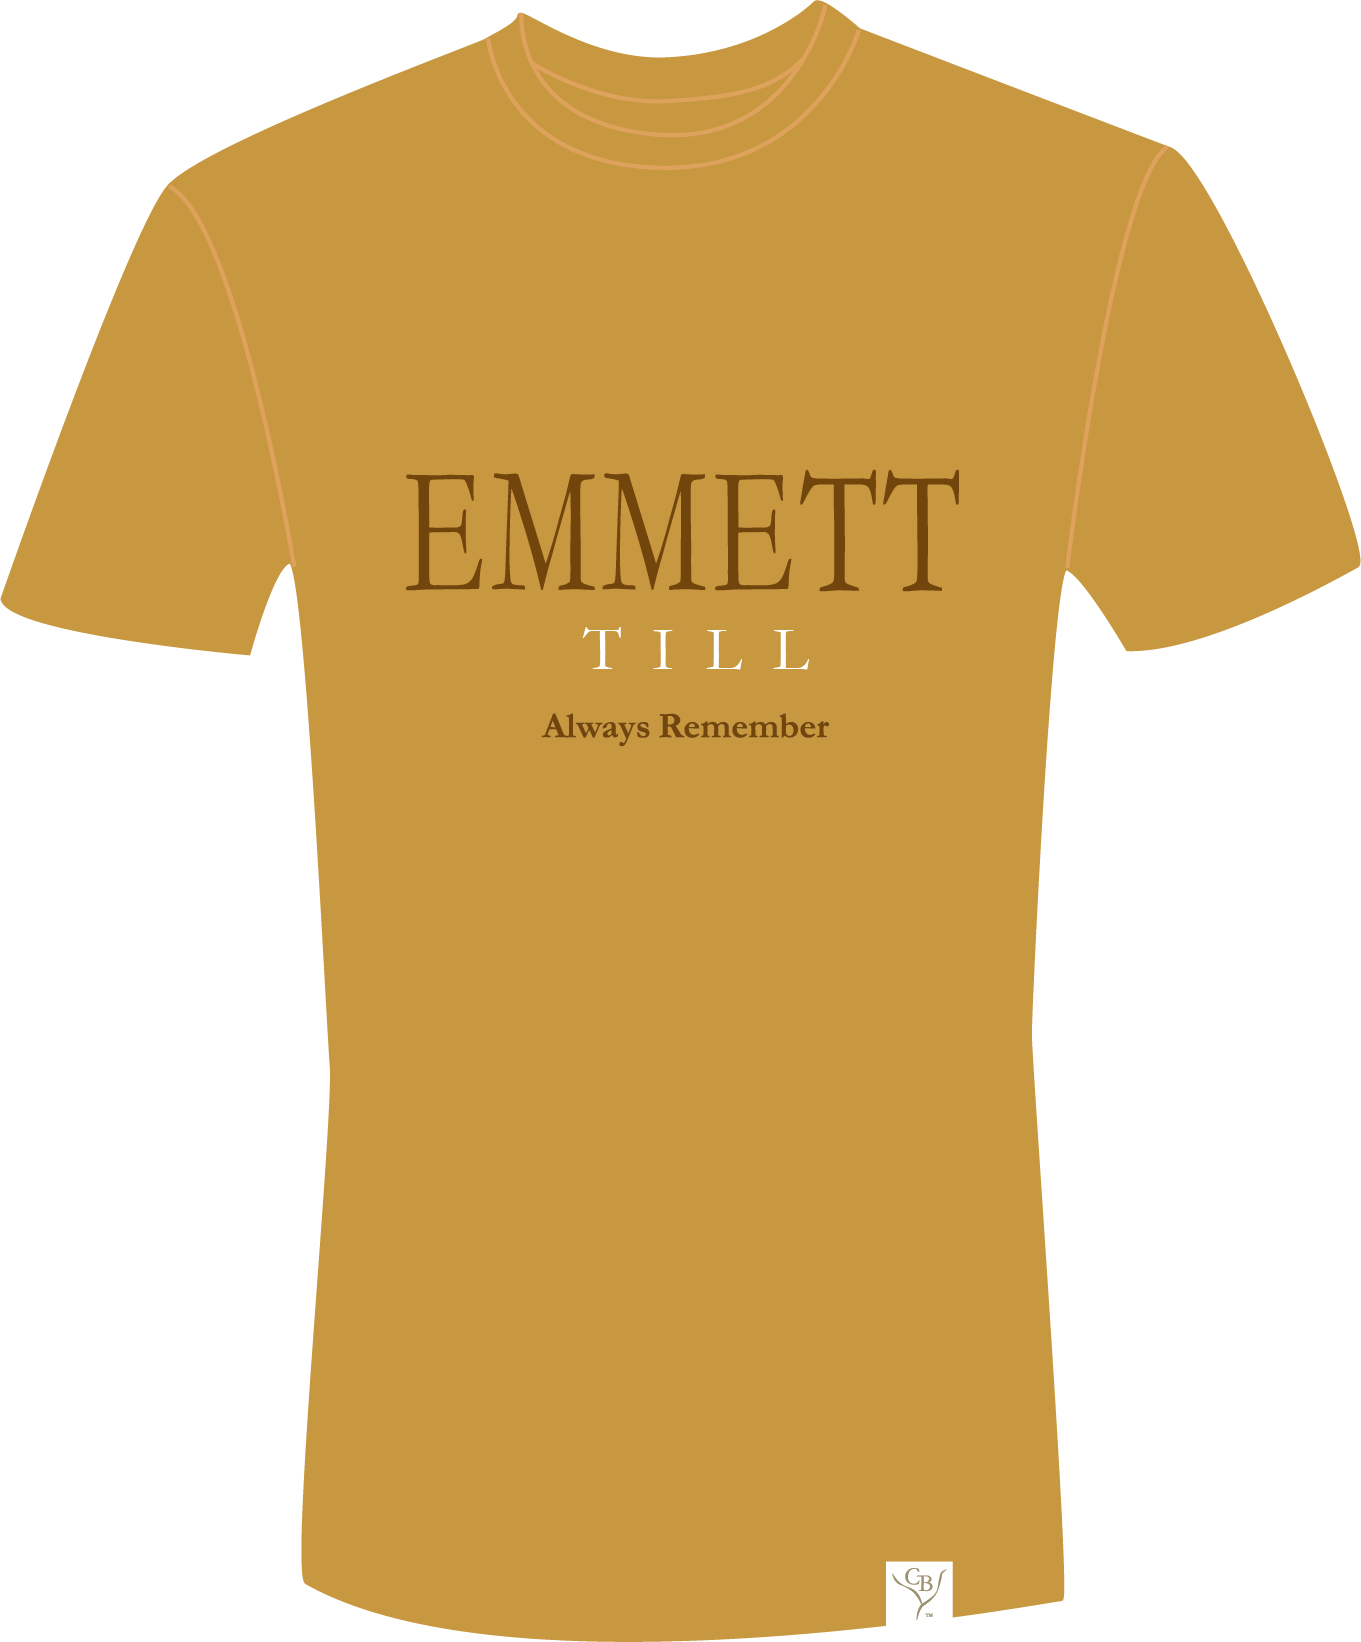 The Emmett